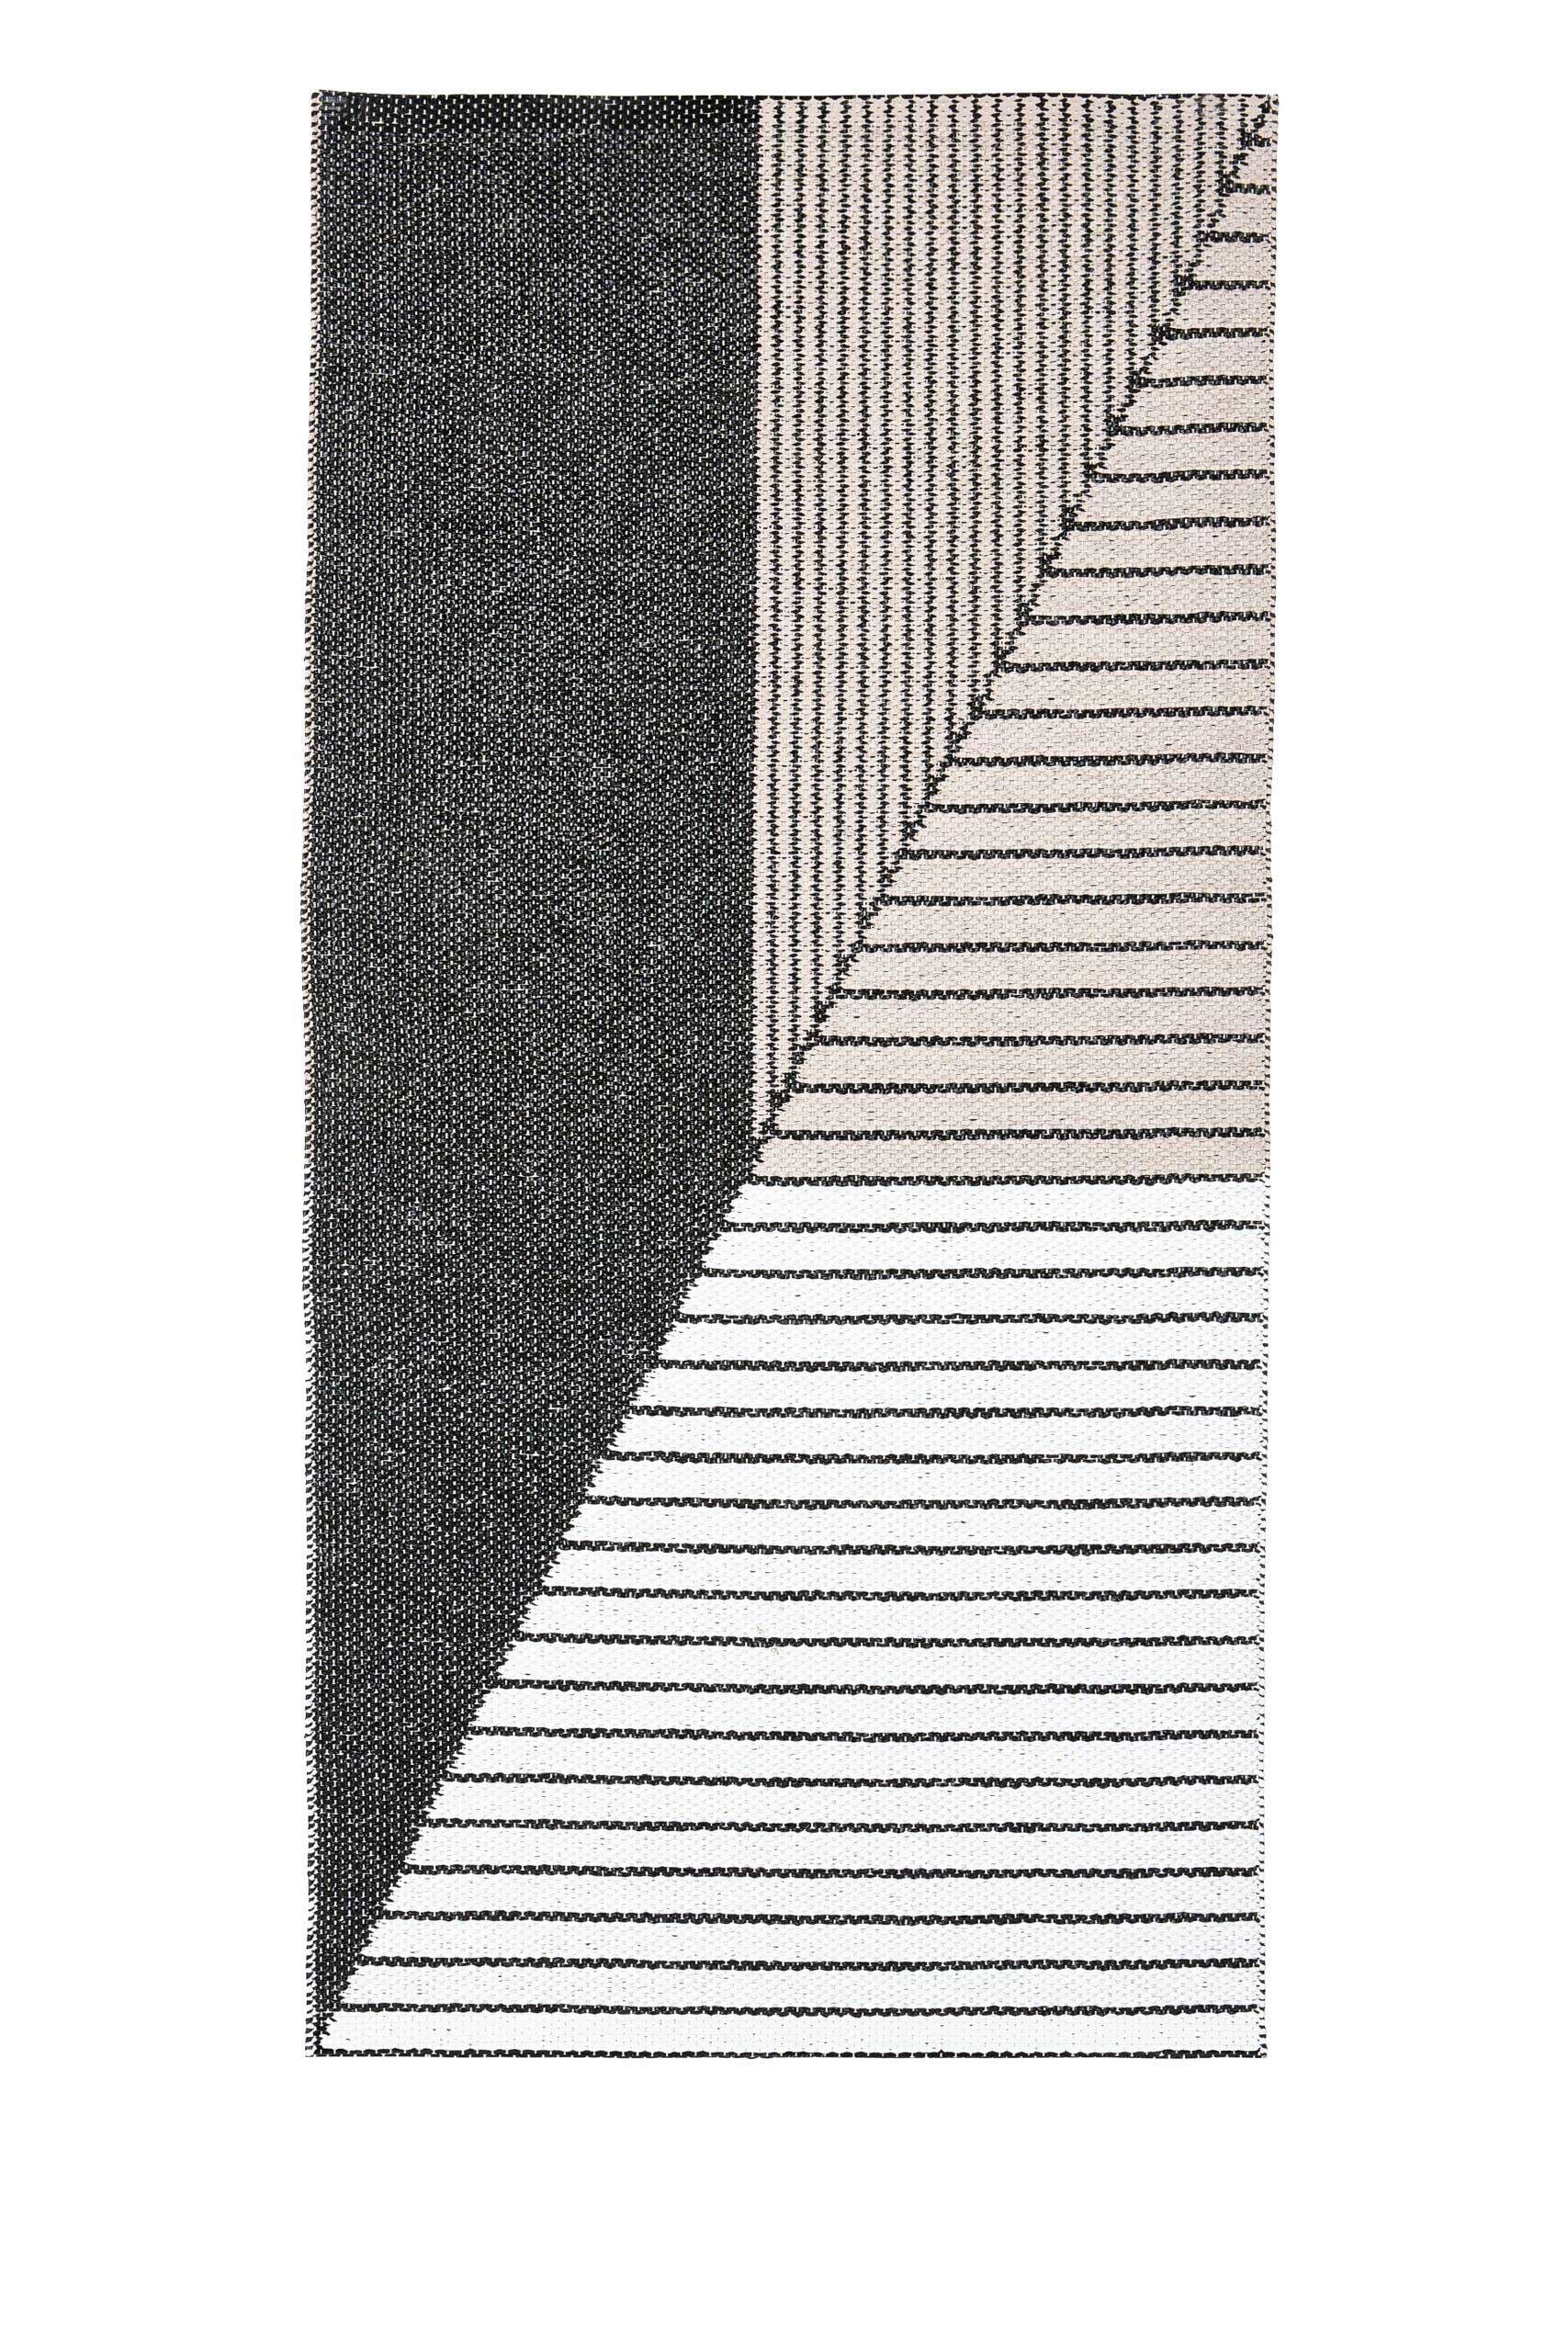 Carpets & More :: Dywan zewnętrzny Stripe różowo-czarny